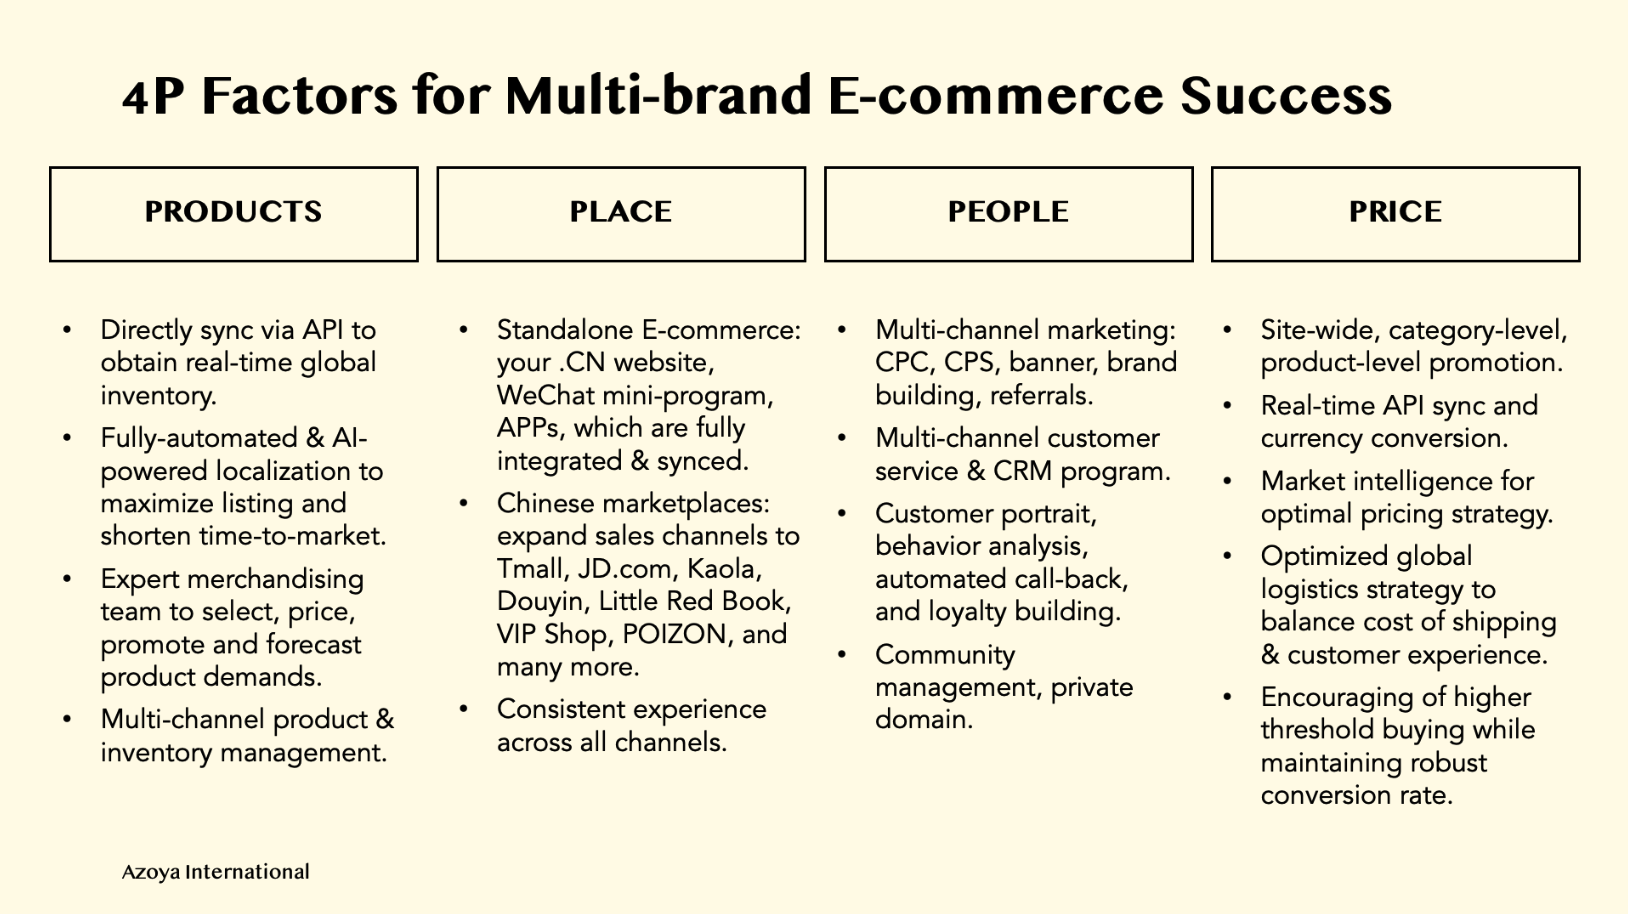 4P factors for multi-brand e-commerce success